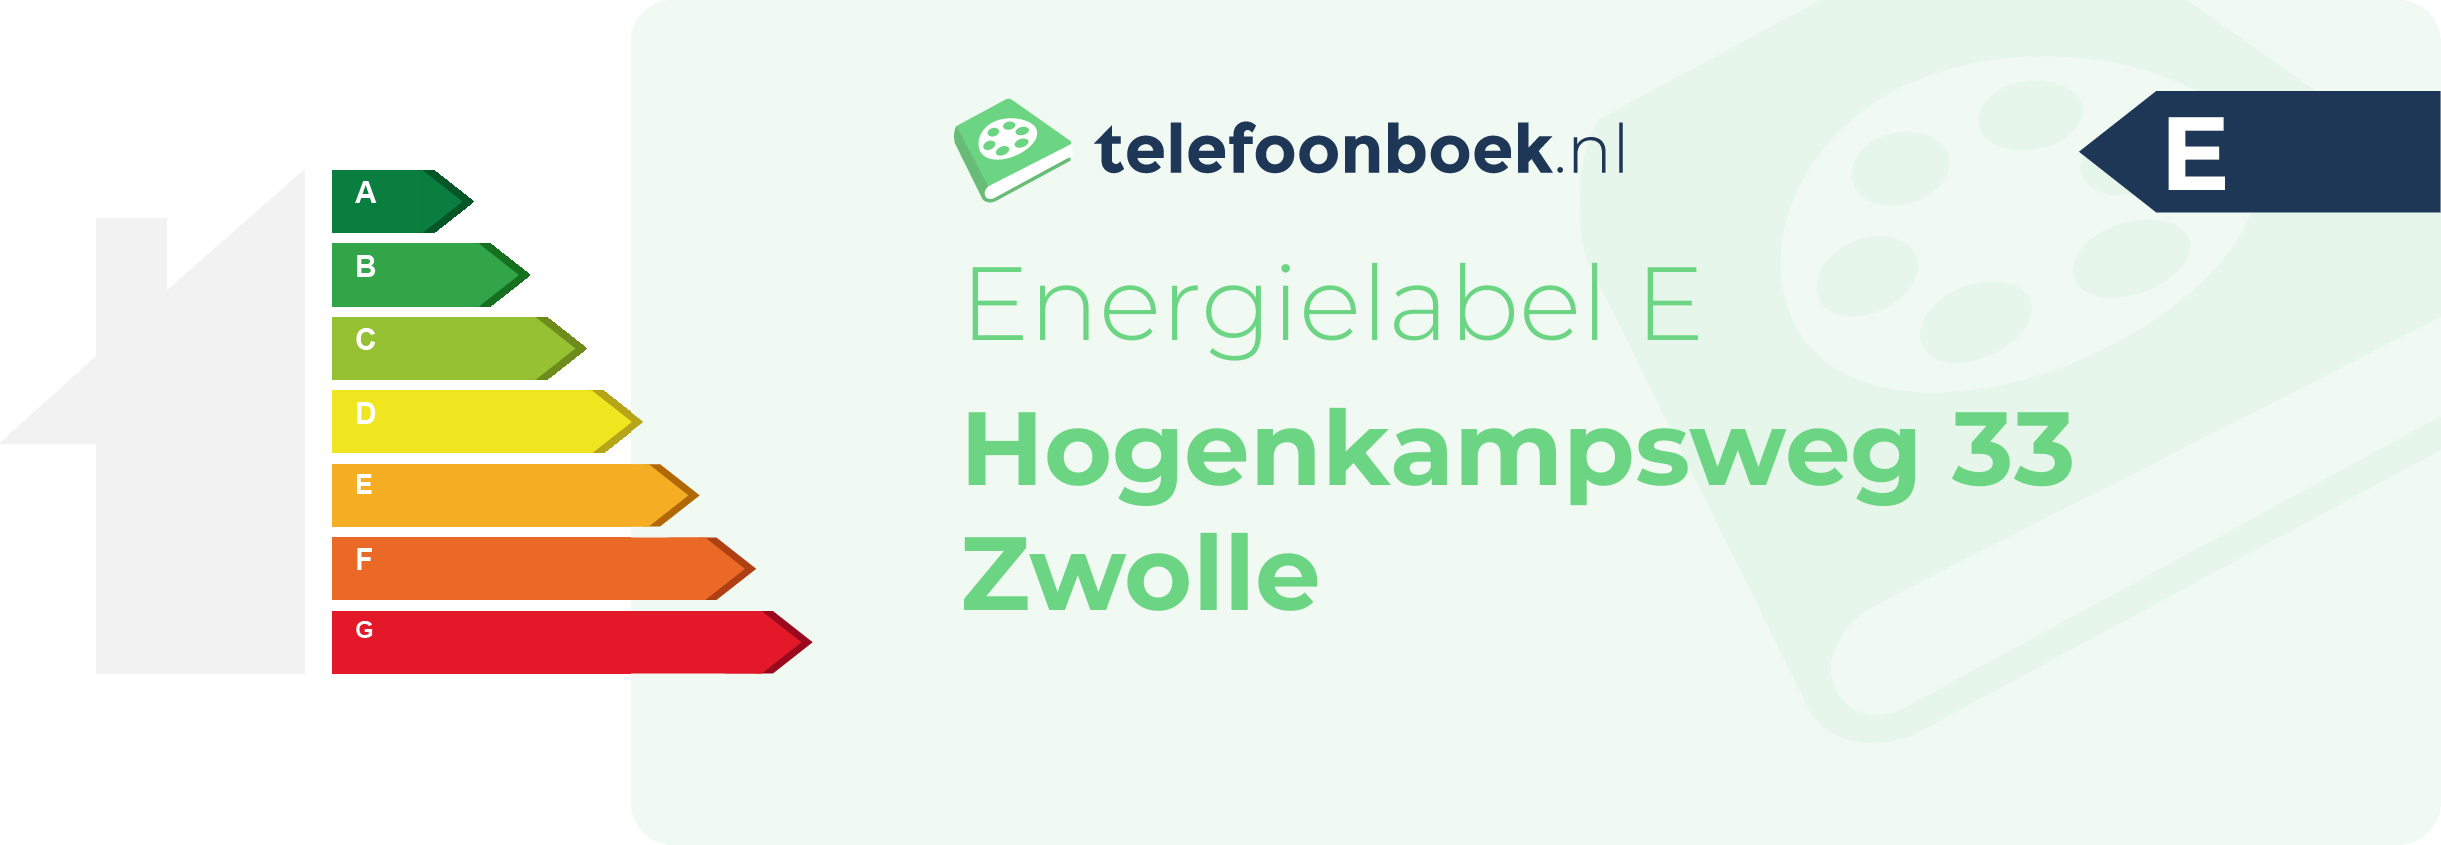 Energielabel Hogenkampsweg 33 Zwolle